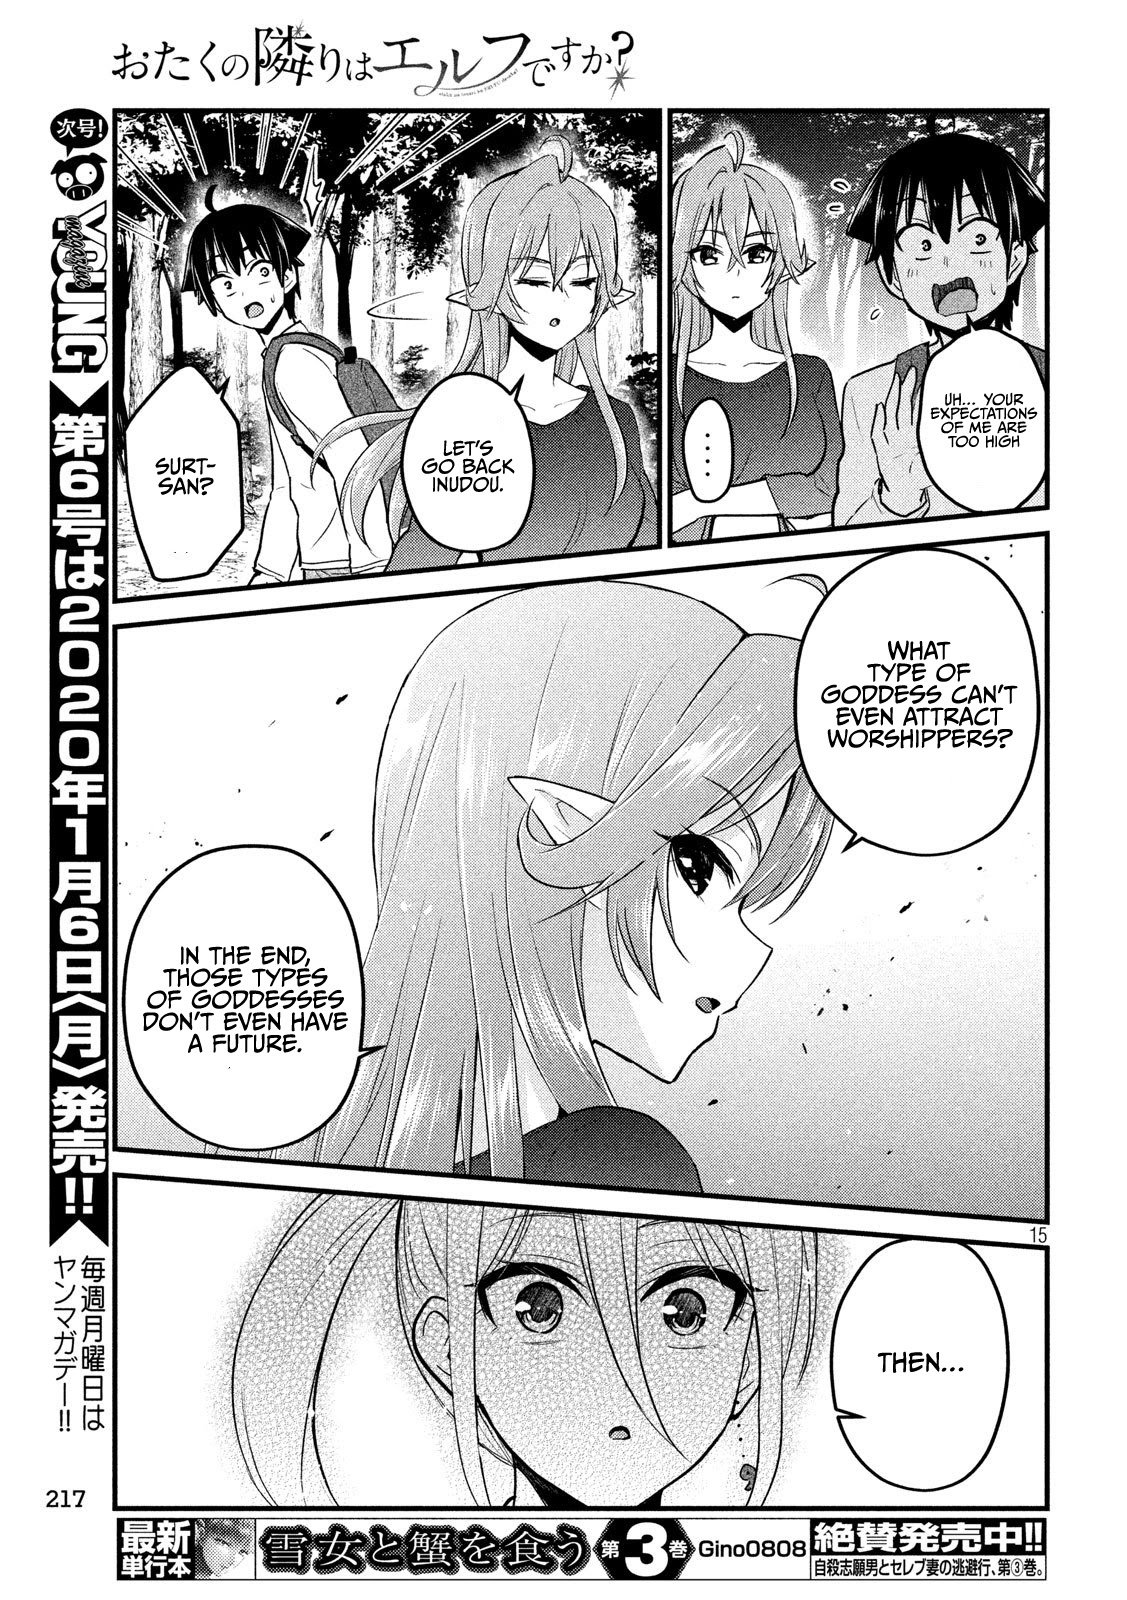 Otaku No Tonari Wa Erufu Desuka? - 11 page 15